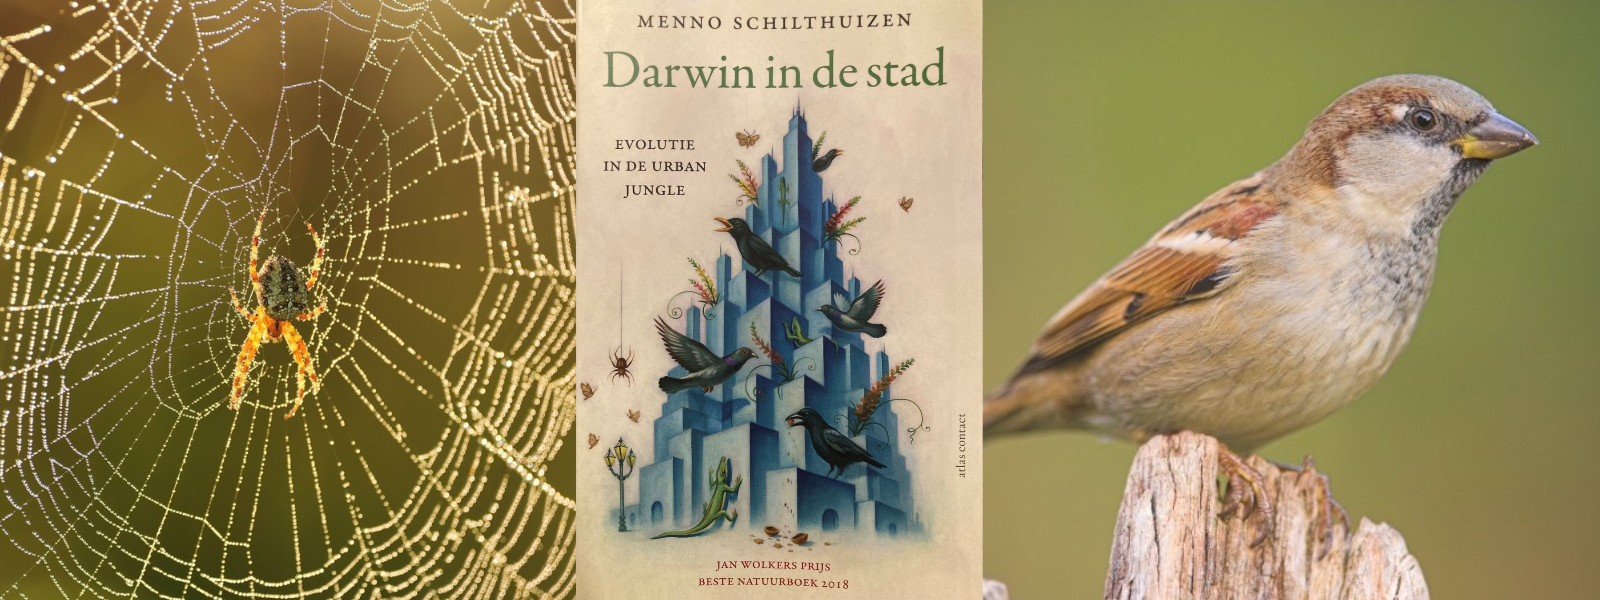 Links: kruisspin in web, midden: 'Darwin in de stad' van Menno Schilthuizen, rechts: huismus